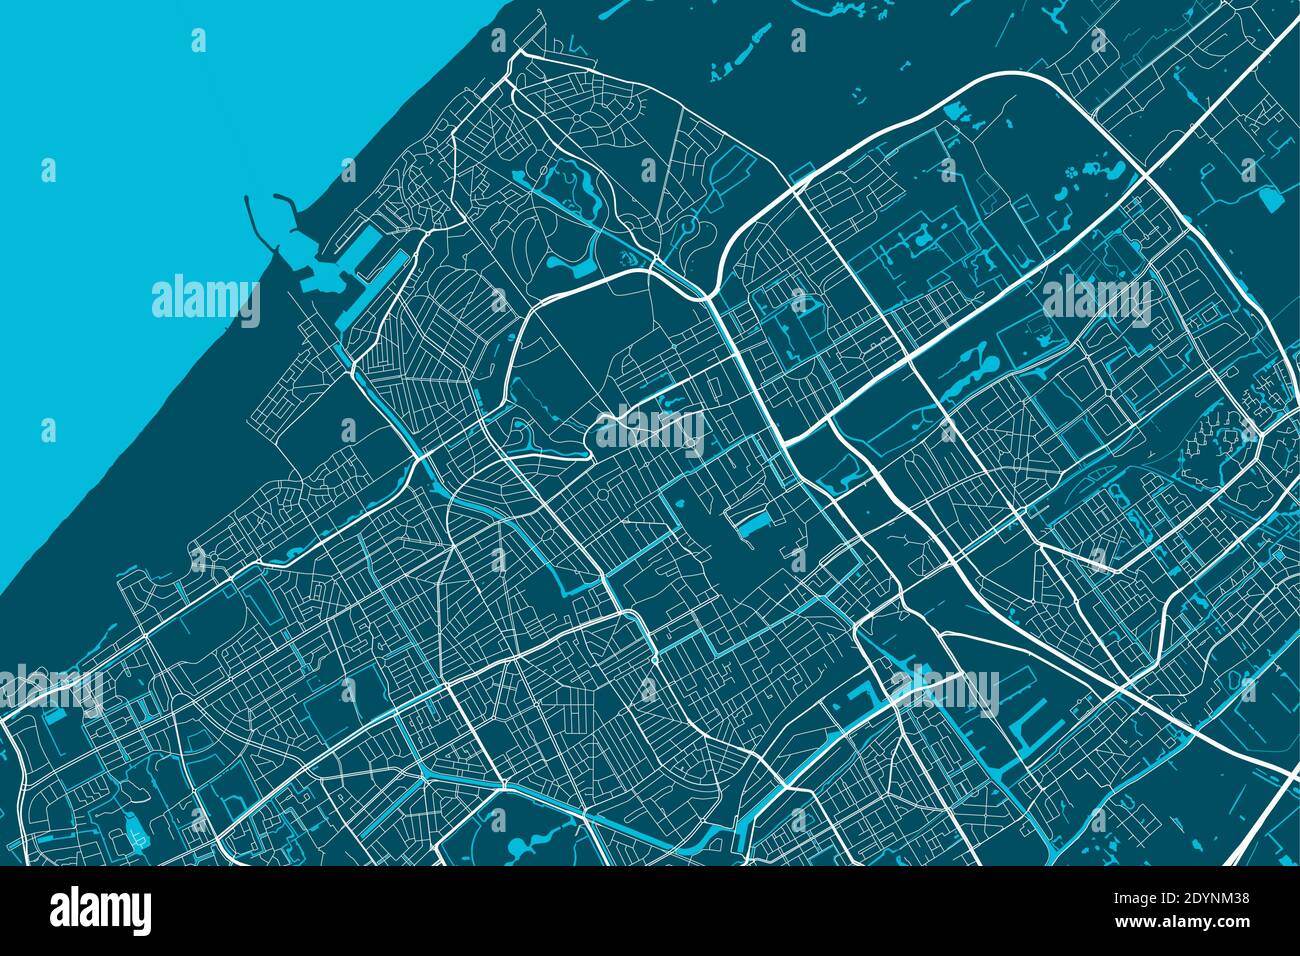 Mapa detallado de la zona administrativa de la ciudad de la haya. Ilustración vectorial libre de derechos de autor. Panorama urbano. Mapa turístico gráfico decorativo del territorio de la haya Ilustración del Vector